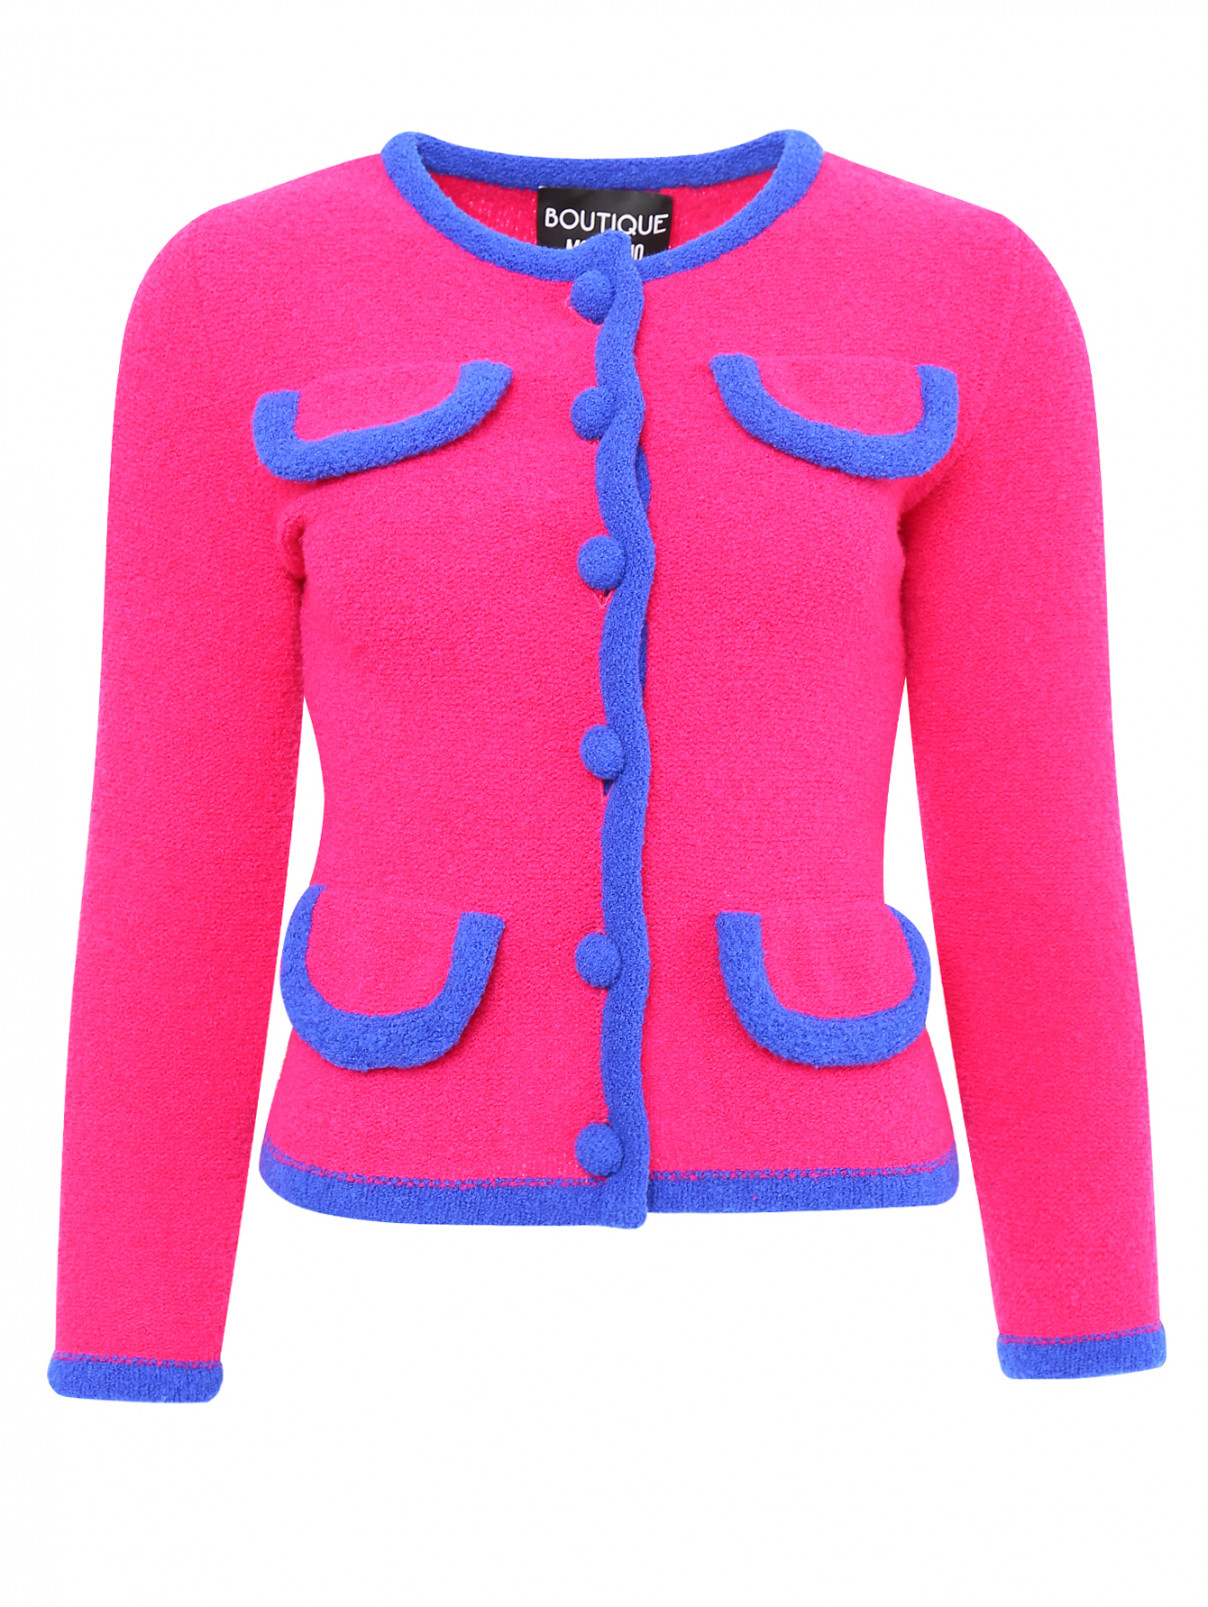 Жакет из шерсти с контрастными вставками Moschino Boutique  –  Общий вид  – Цвет:  Розовый